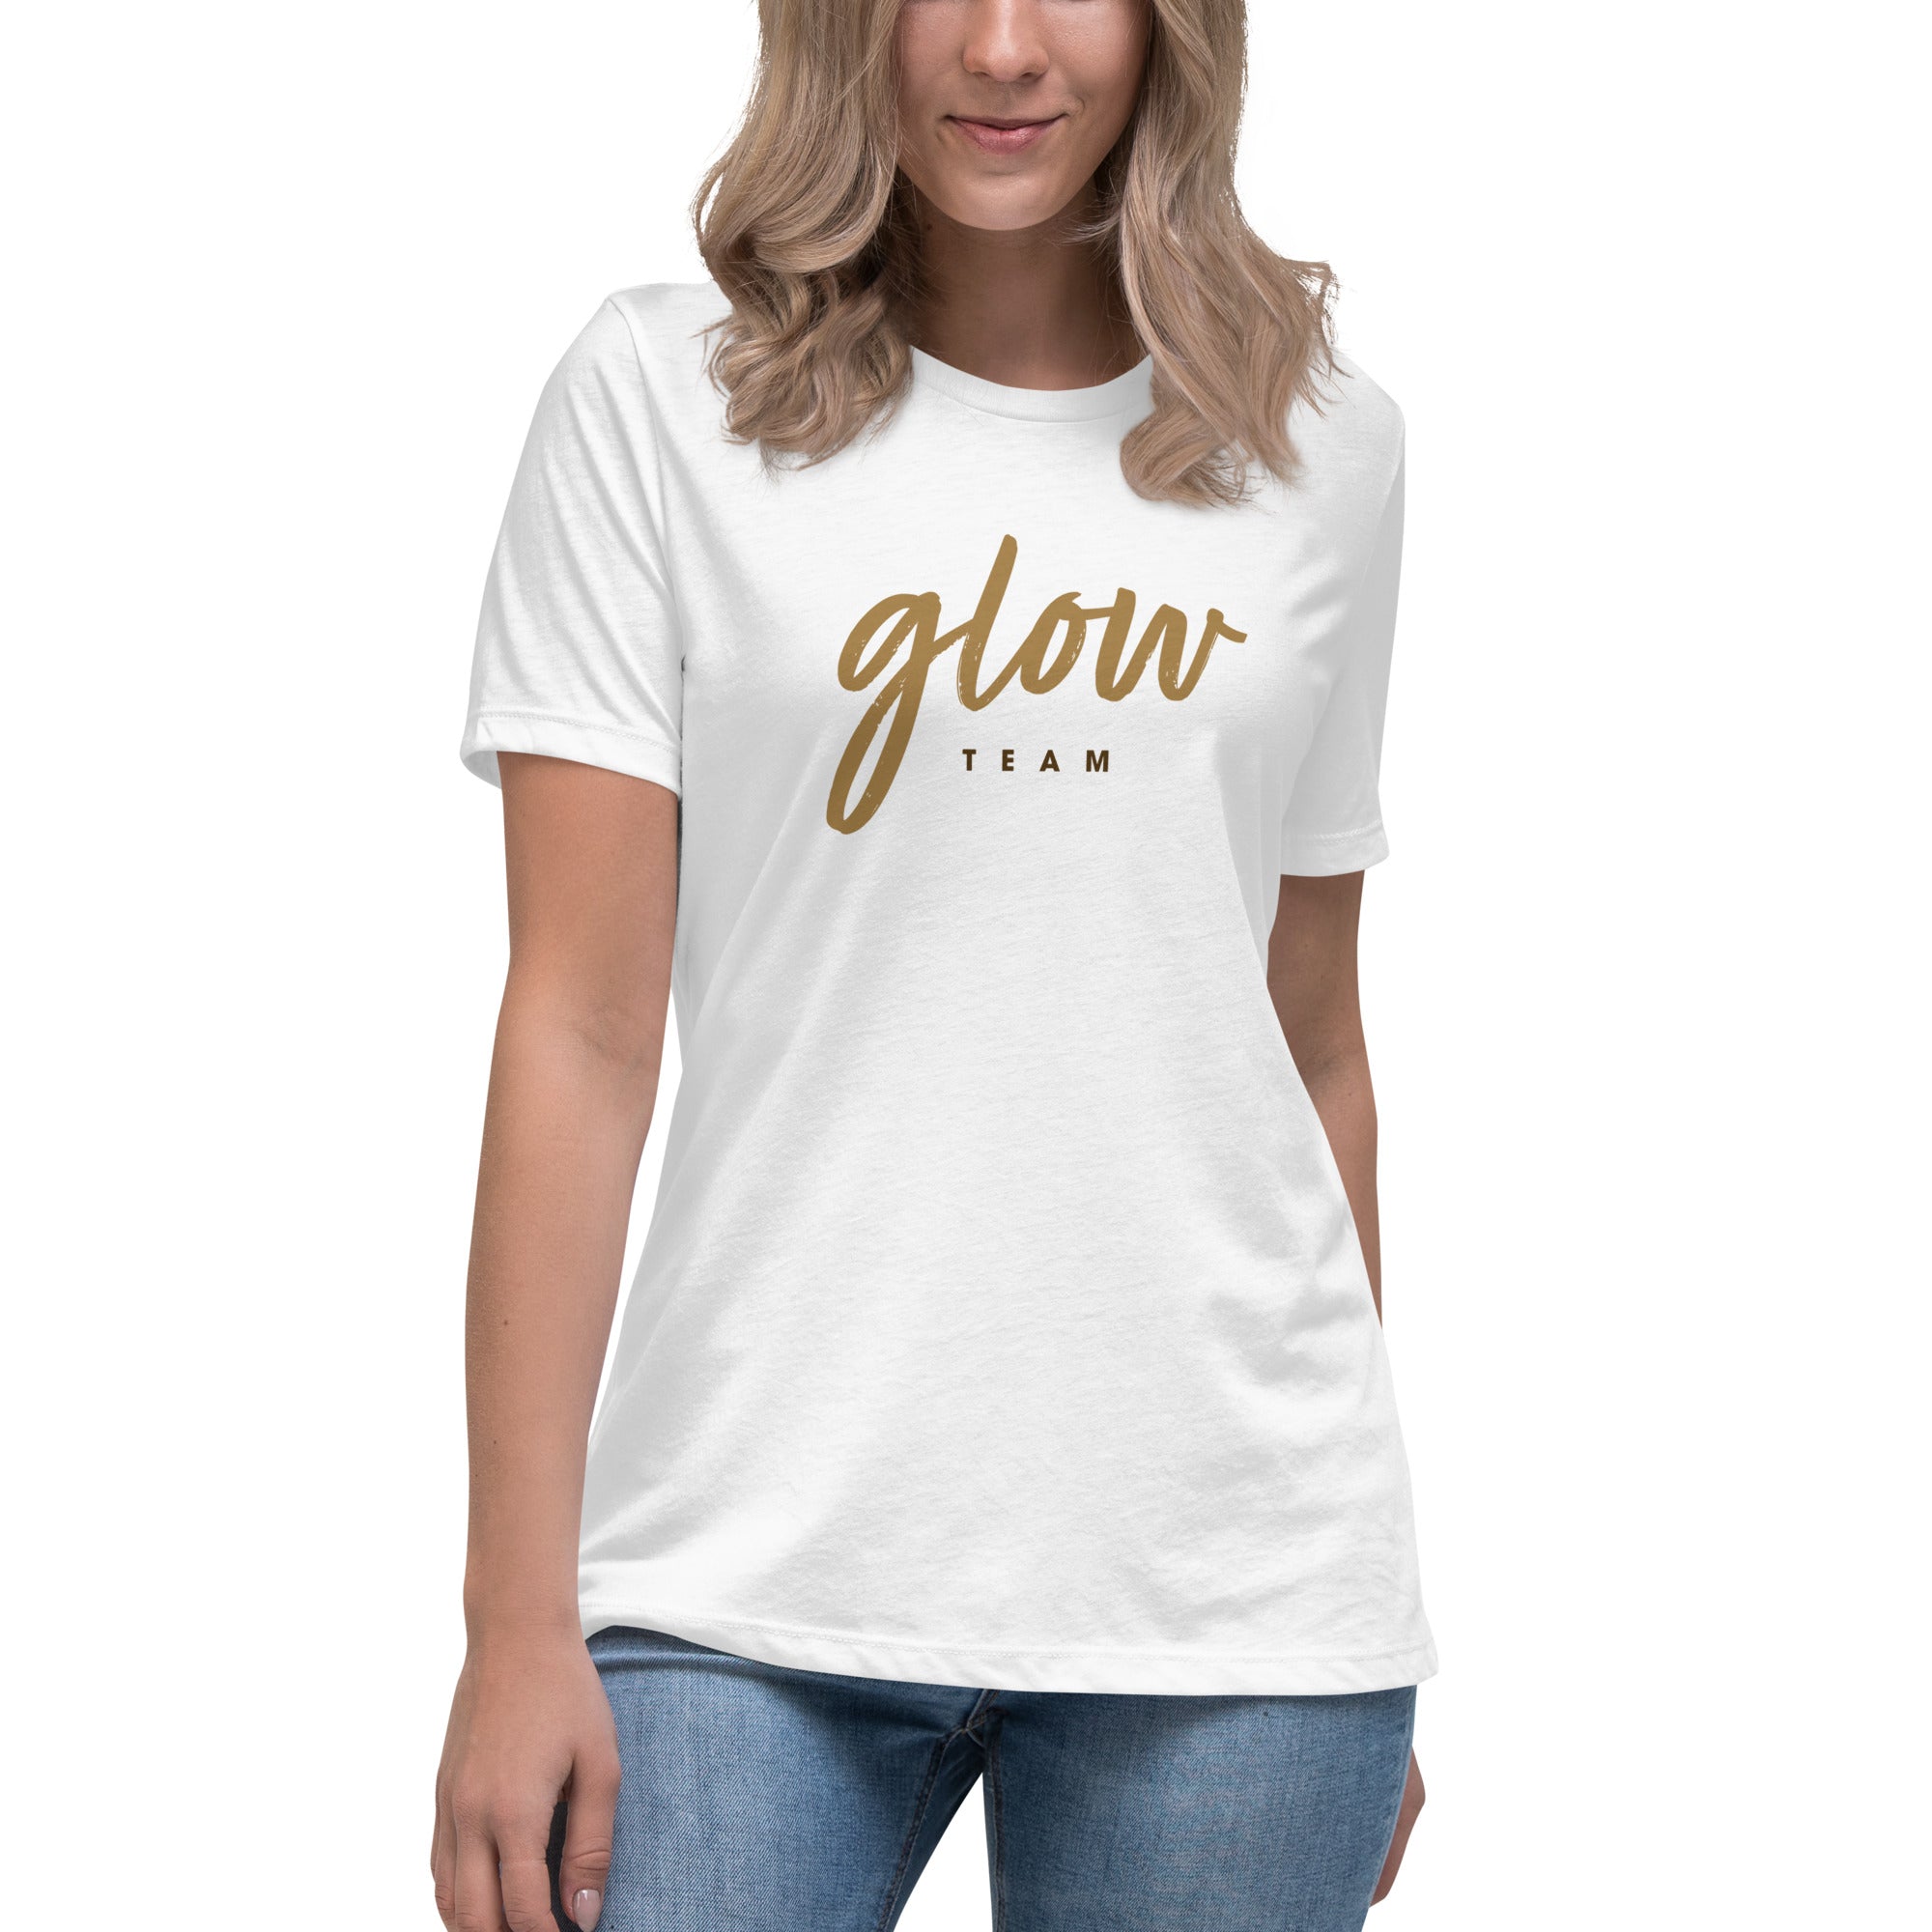 Glow Team Women's Relaxed T-Shirt